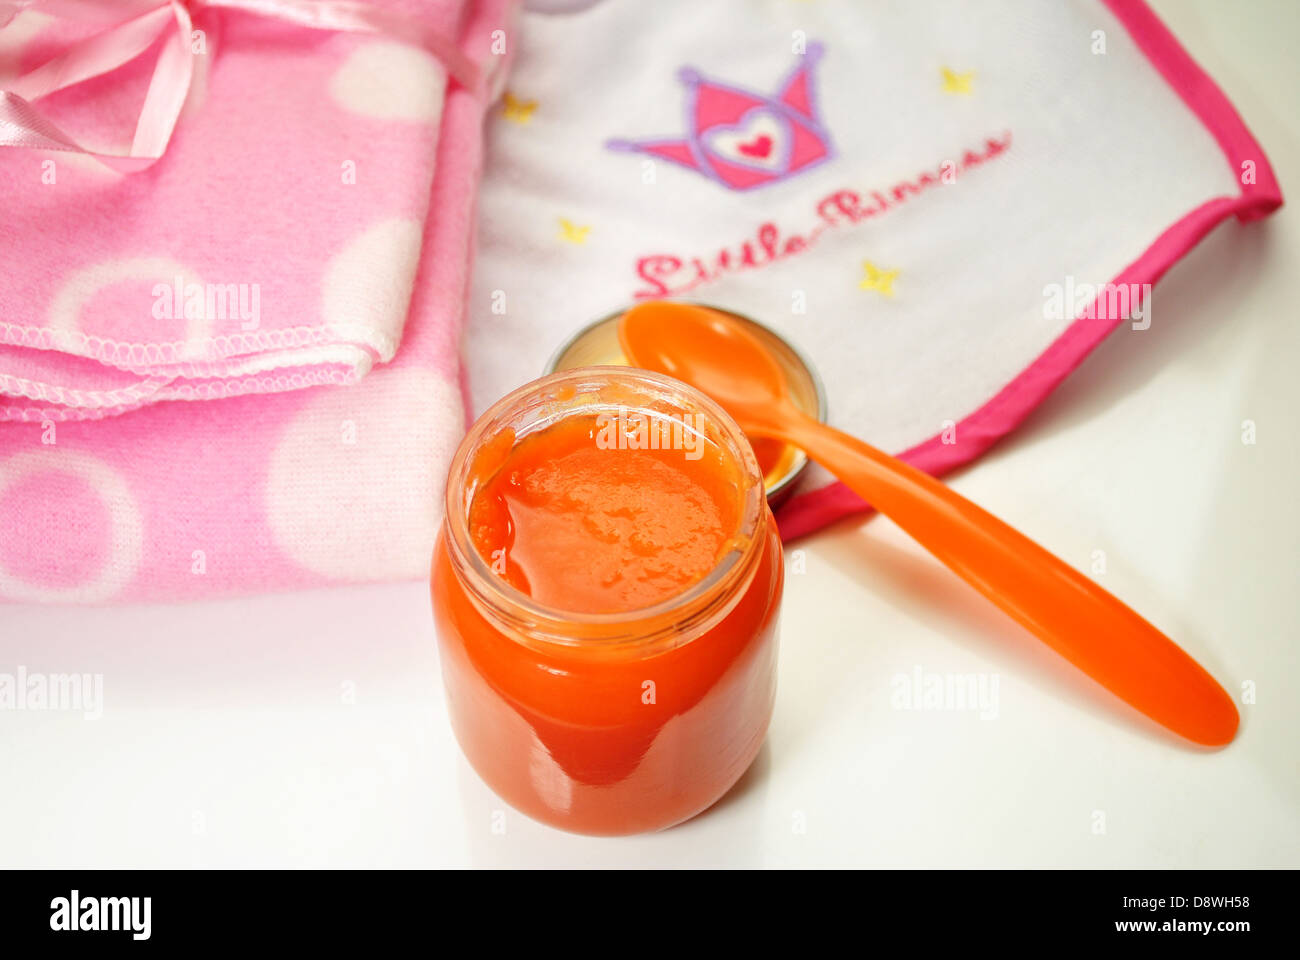 La comida del bebé naranja con un babero rosa y blanco Foto de stock